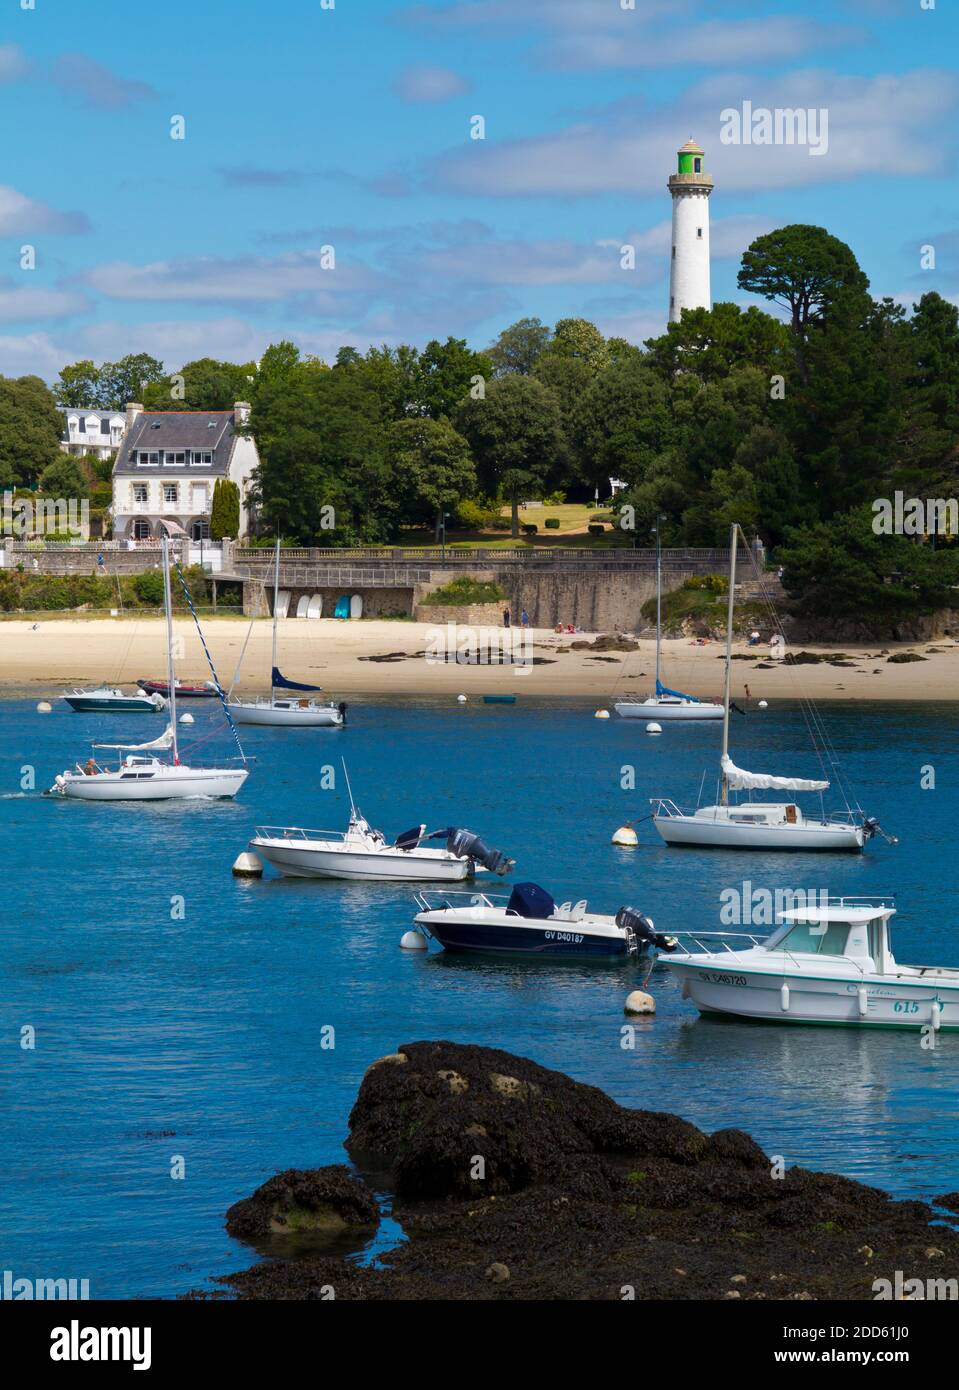 Vue d'été de Benodet ville côtière sur l'estuaire de l'Odet dans le Finistère Bretagne nord-ouest de la France avec des bateaux amarrés dans le port. Banque D'Images